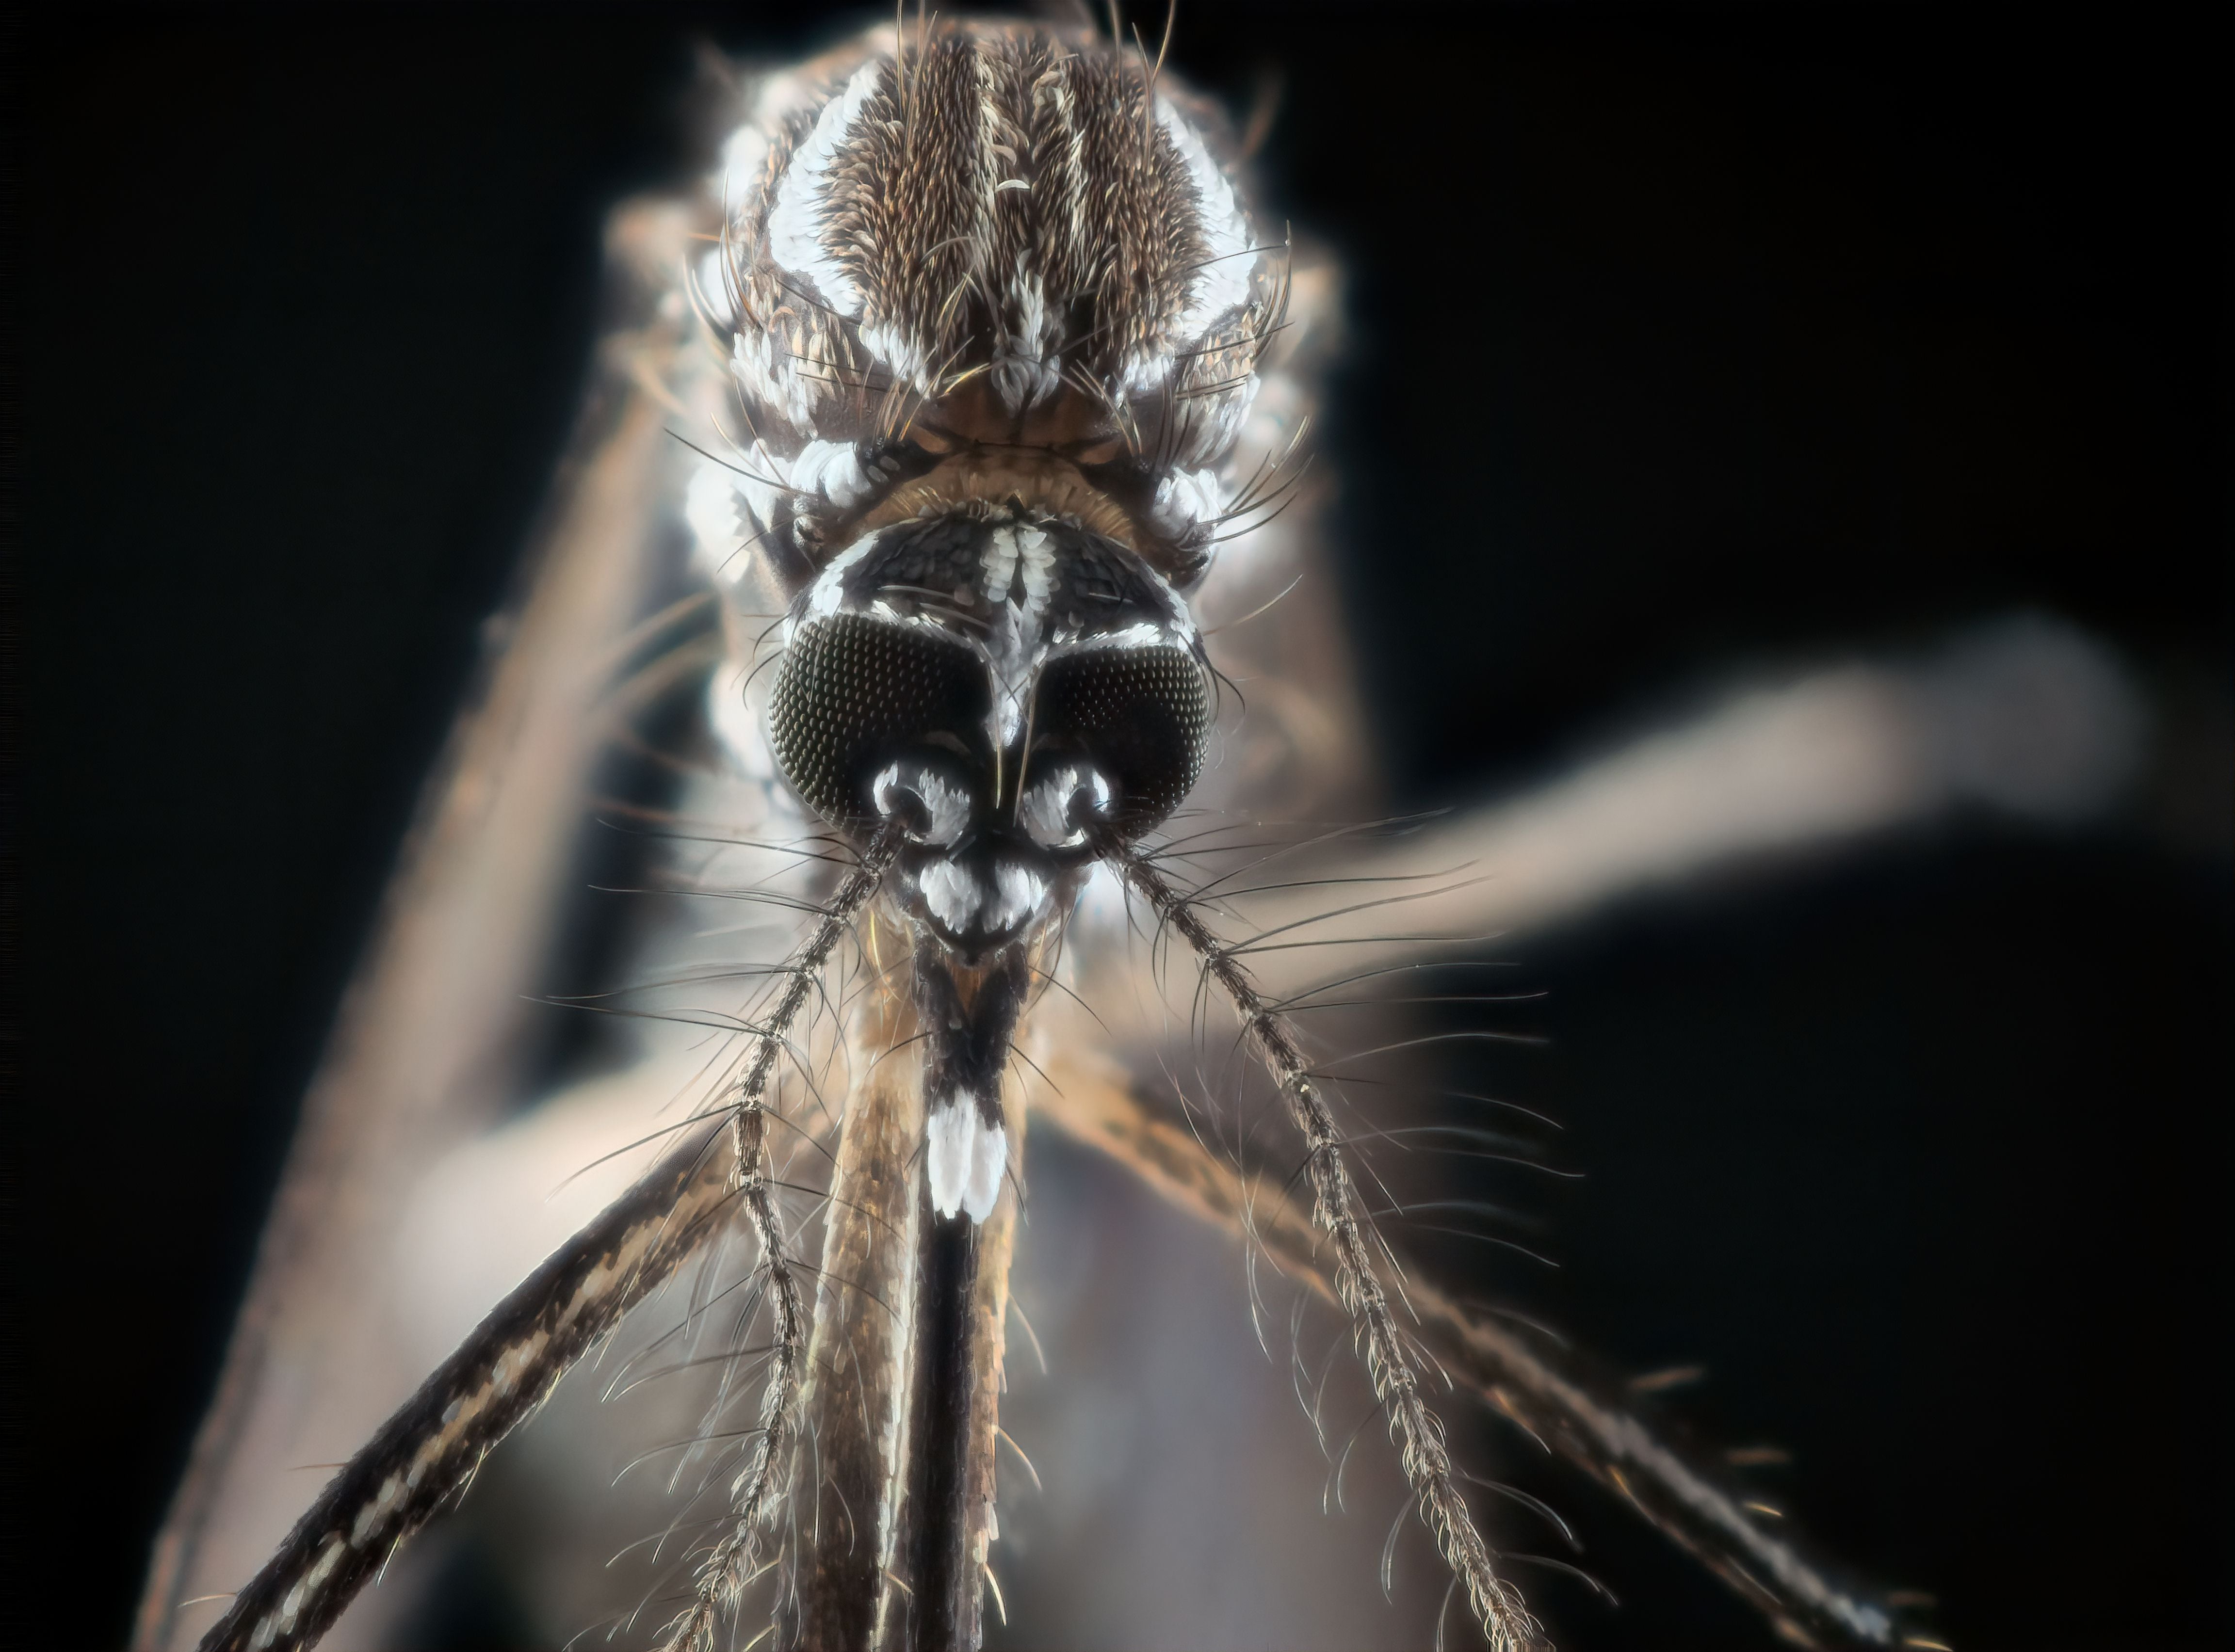 El dengue no tiene vacuna ni una medicina específica y tiene un patrón acorde con las estaciones, según la OMS
(Getty Images)